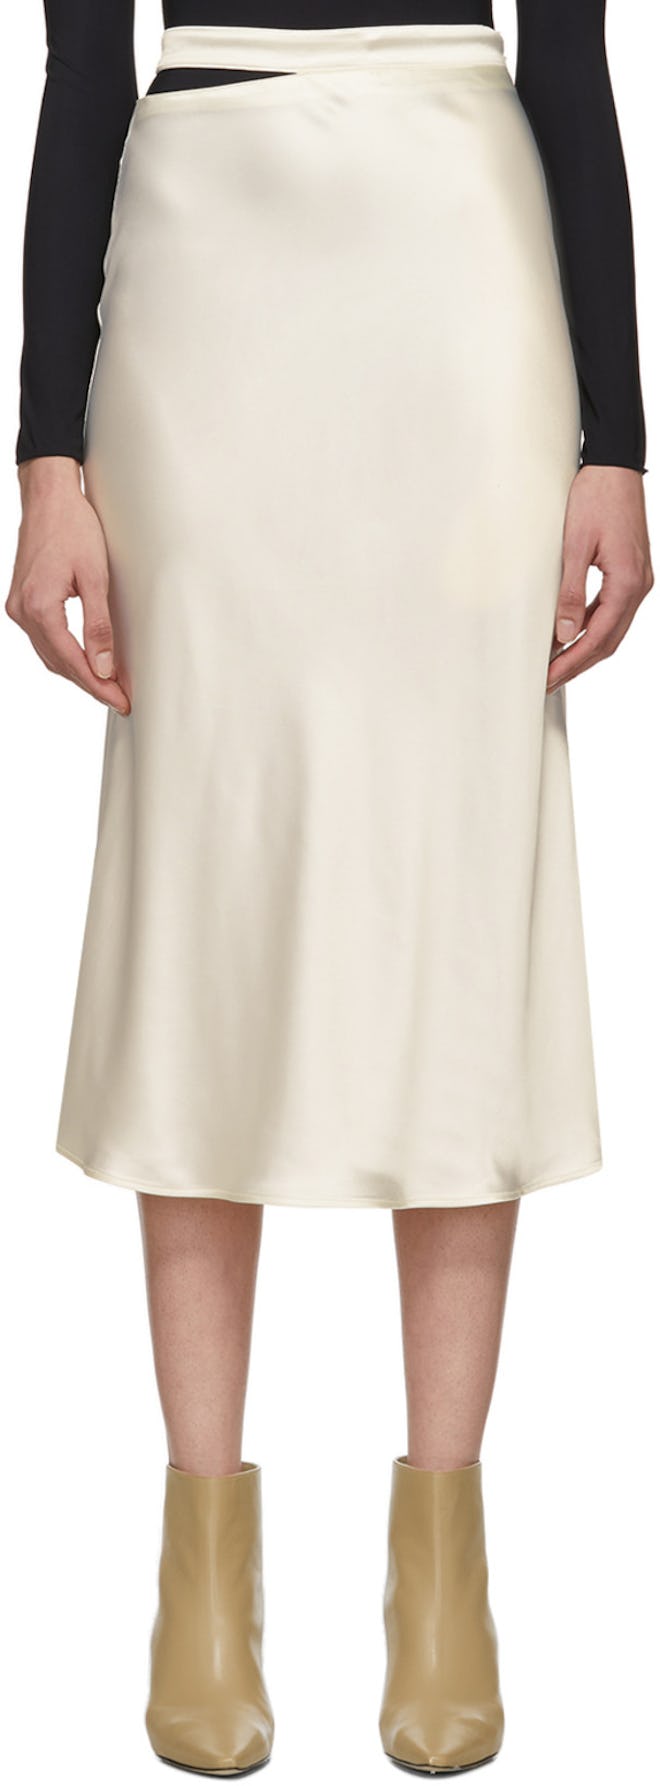 Off-White Satin Skirt